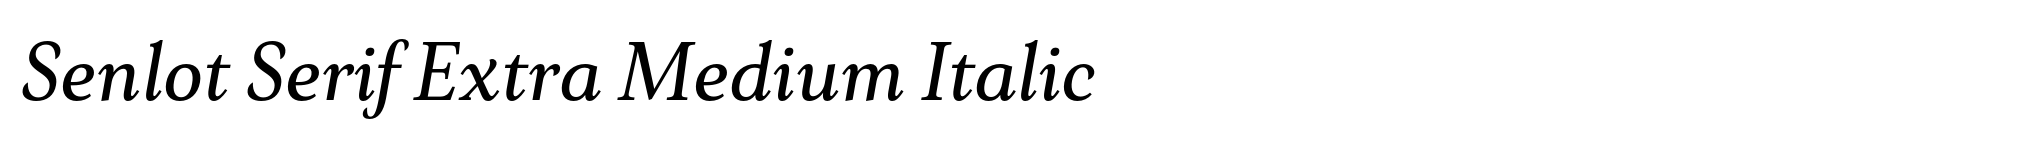 Senlot Serif Extra Medium Italic image